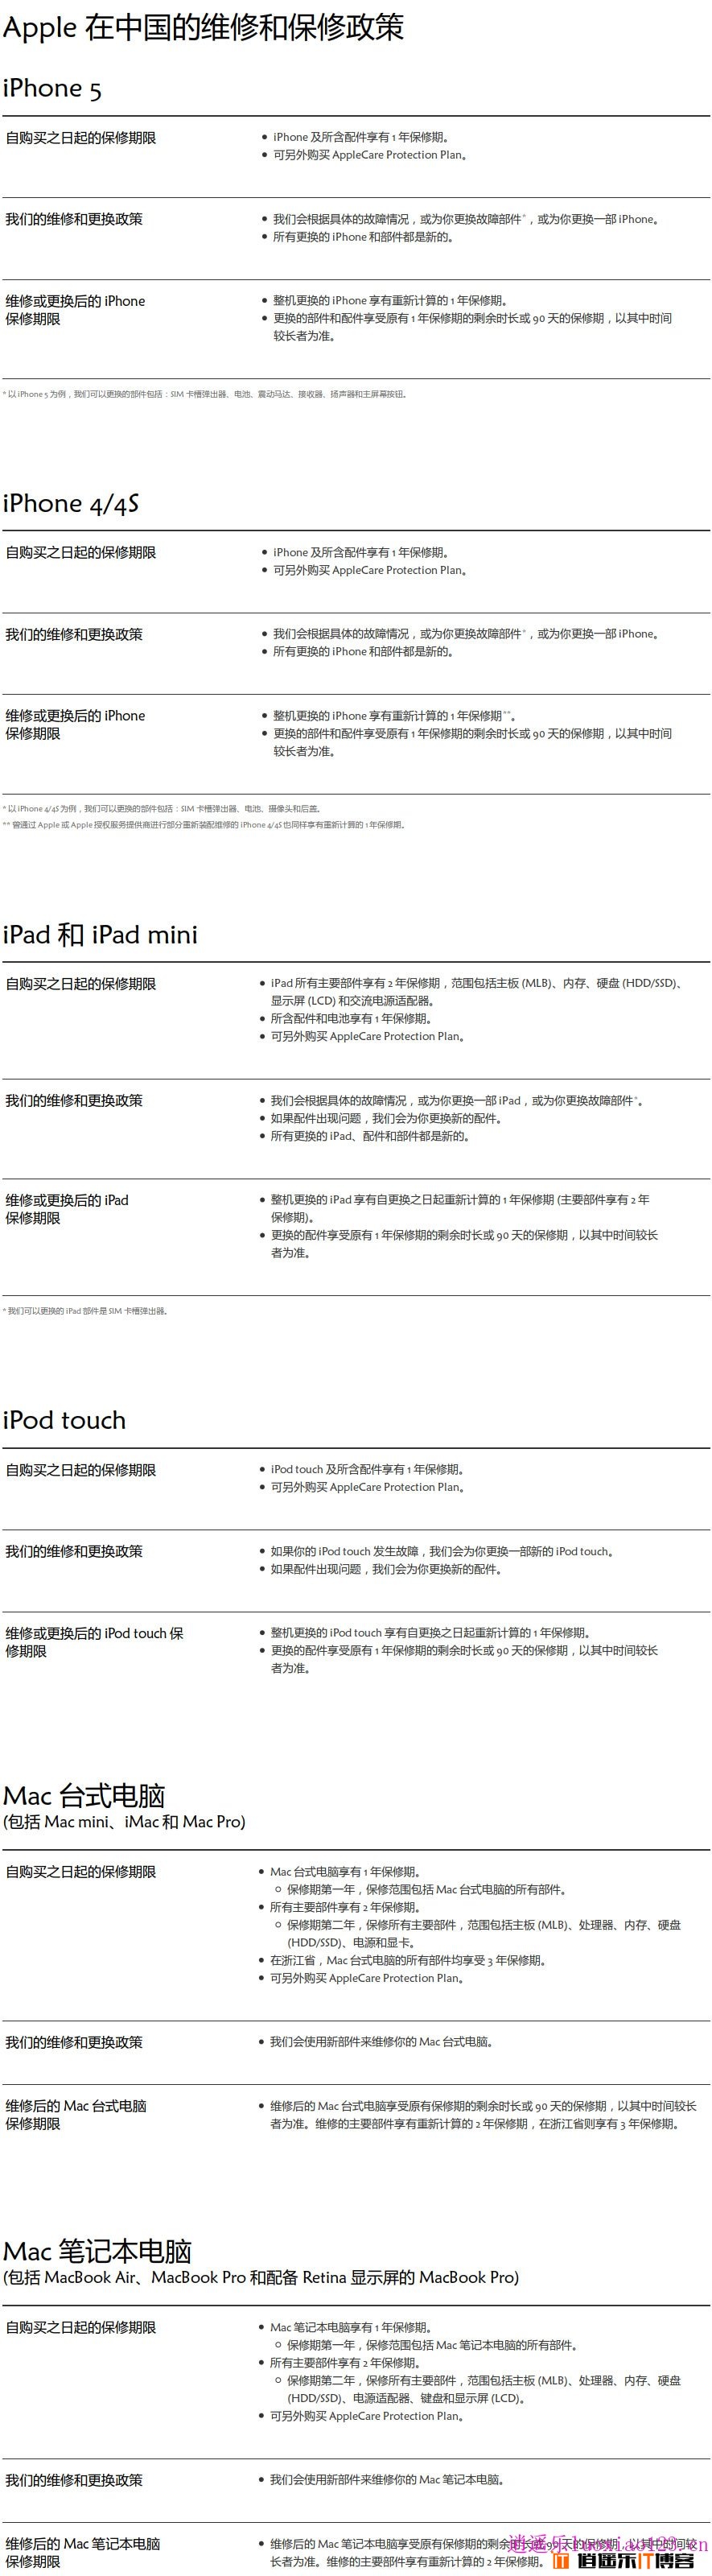 苹果在官网向中国消费者发表道歉函